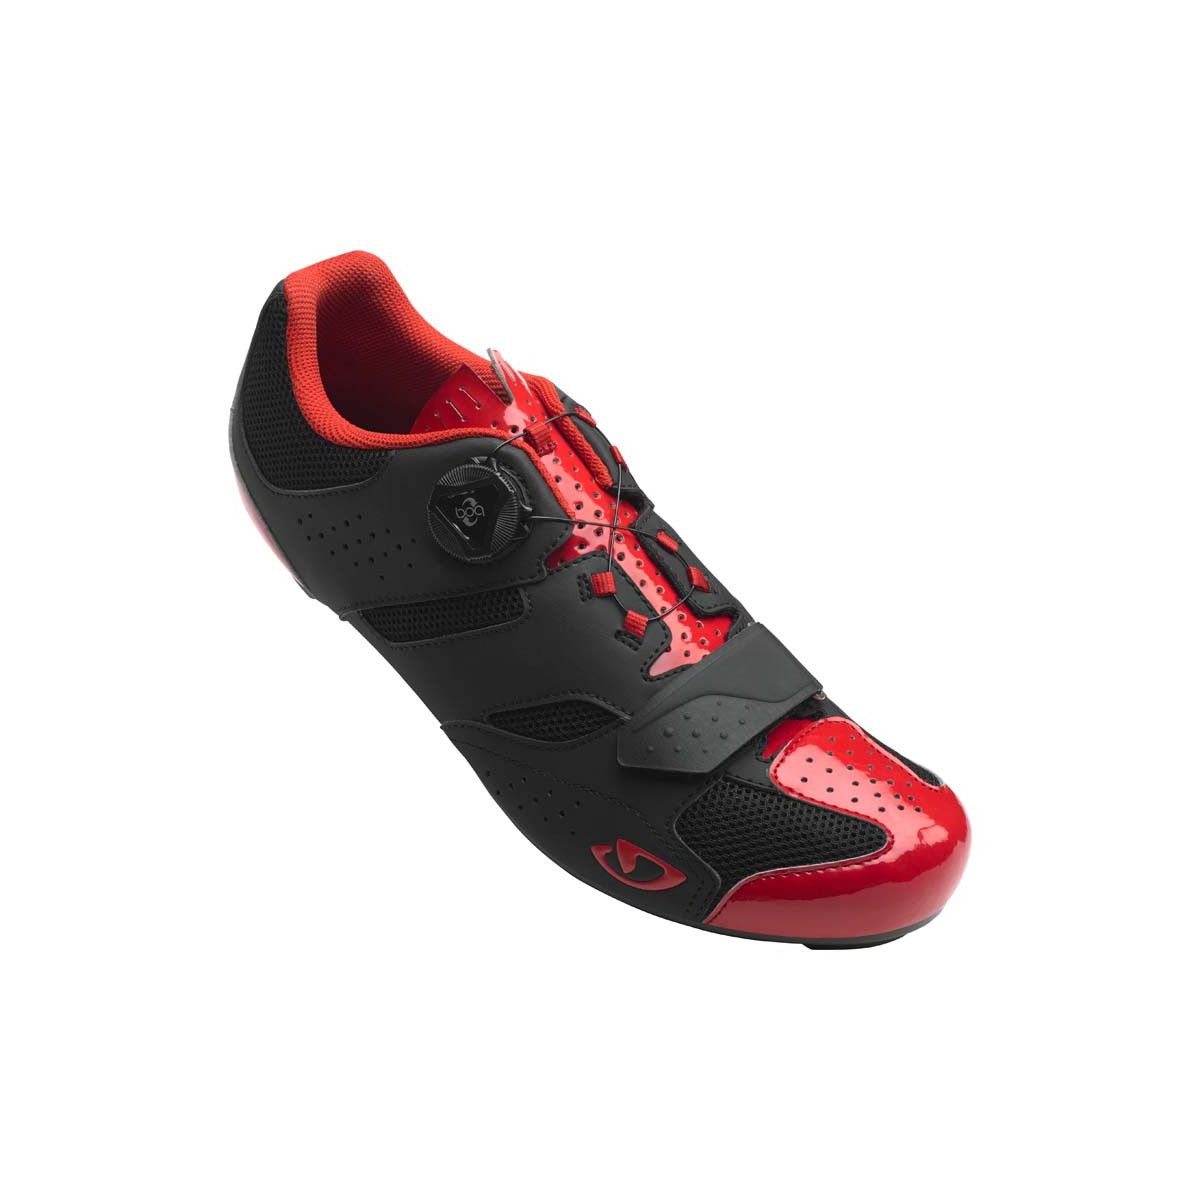 Zapatillas Giro Savix rojo / negro 2019